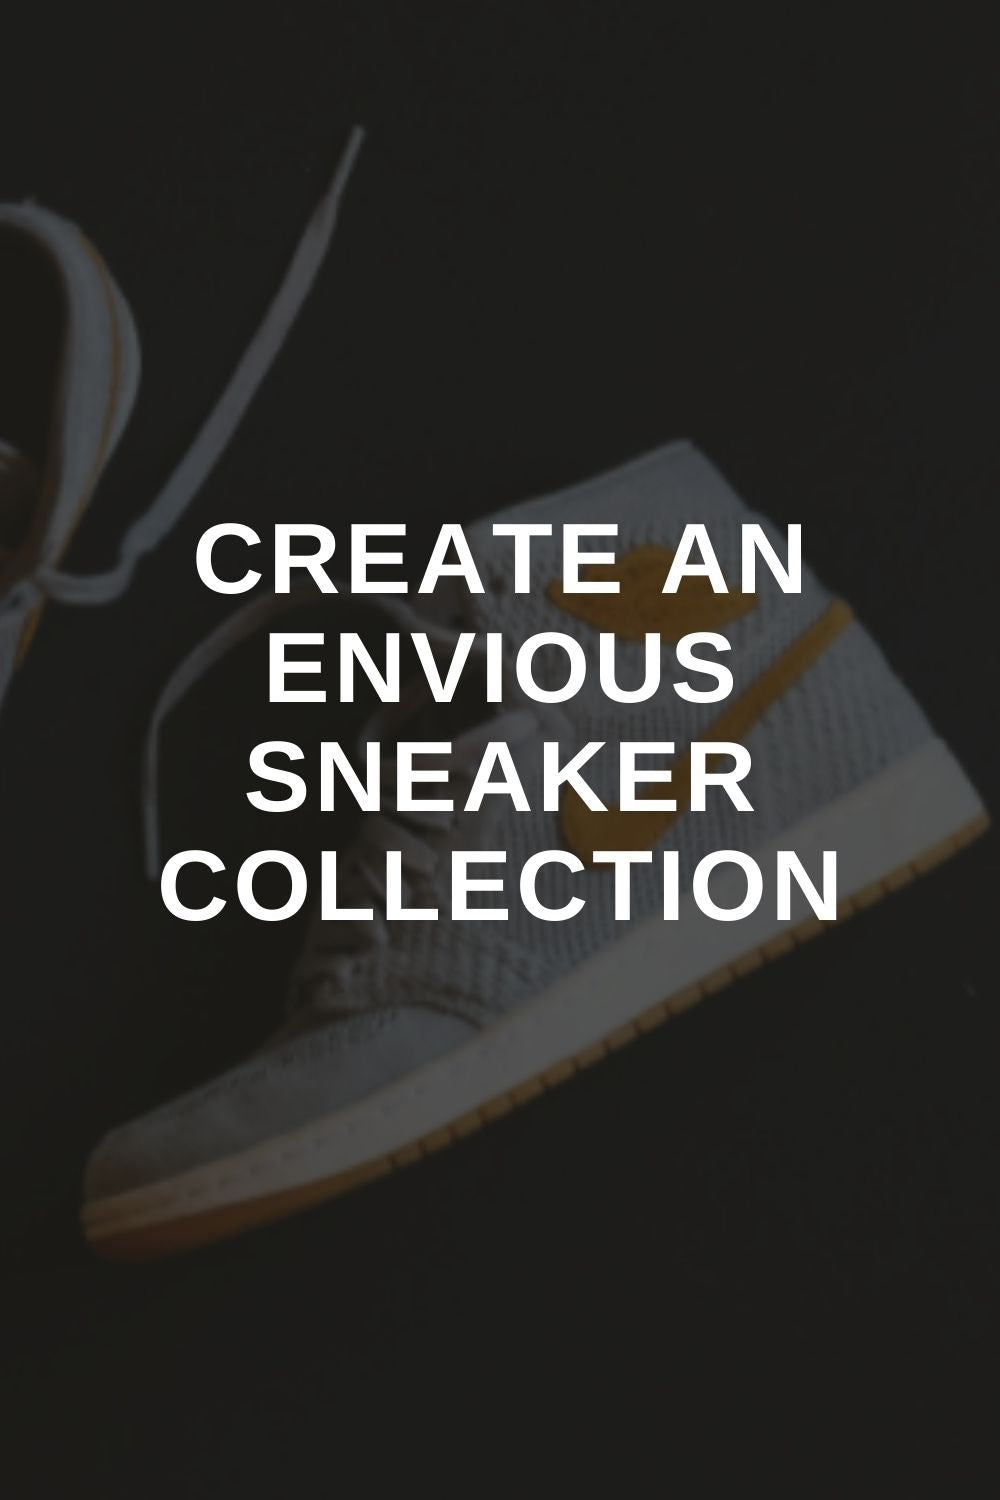 Create an Envious Sneaker Collection